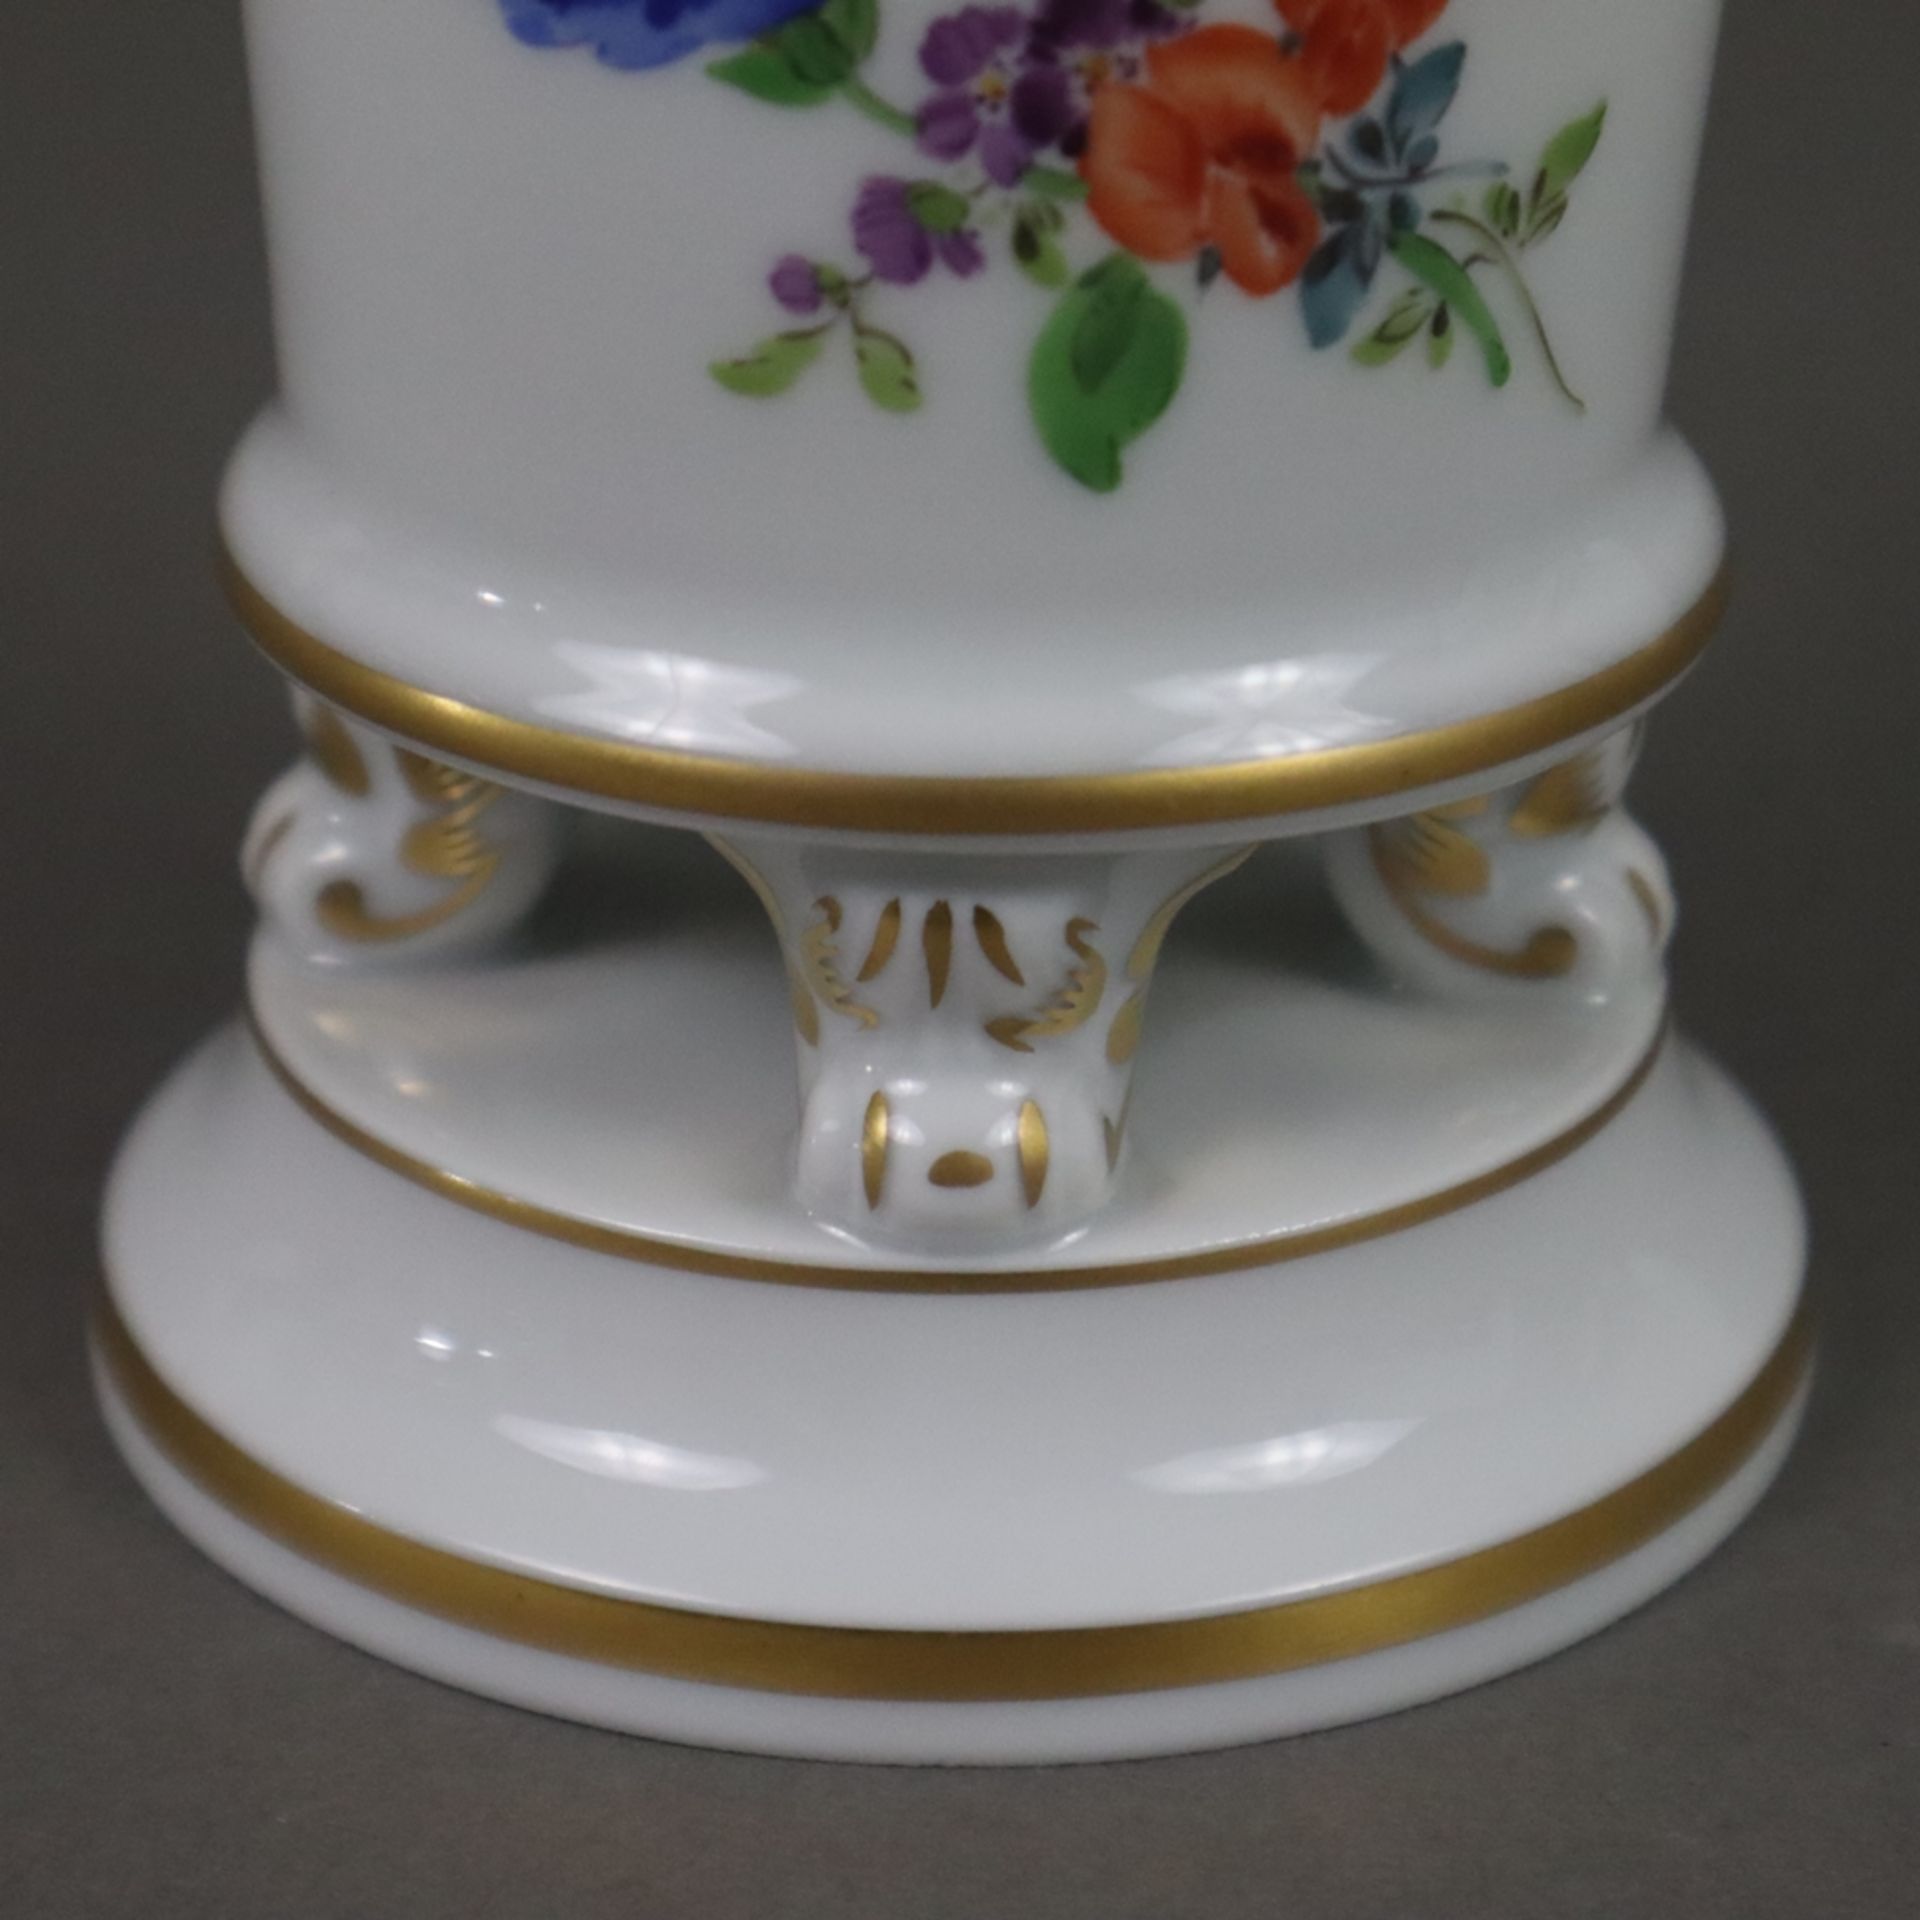 Miniaturvase - Meissen, Porzellan, polychrome Blumenmalerei, Goldstaffage, zylindrischer Körper mit - Image 5 of 6